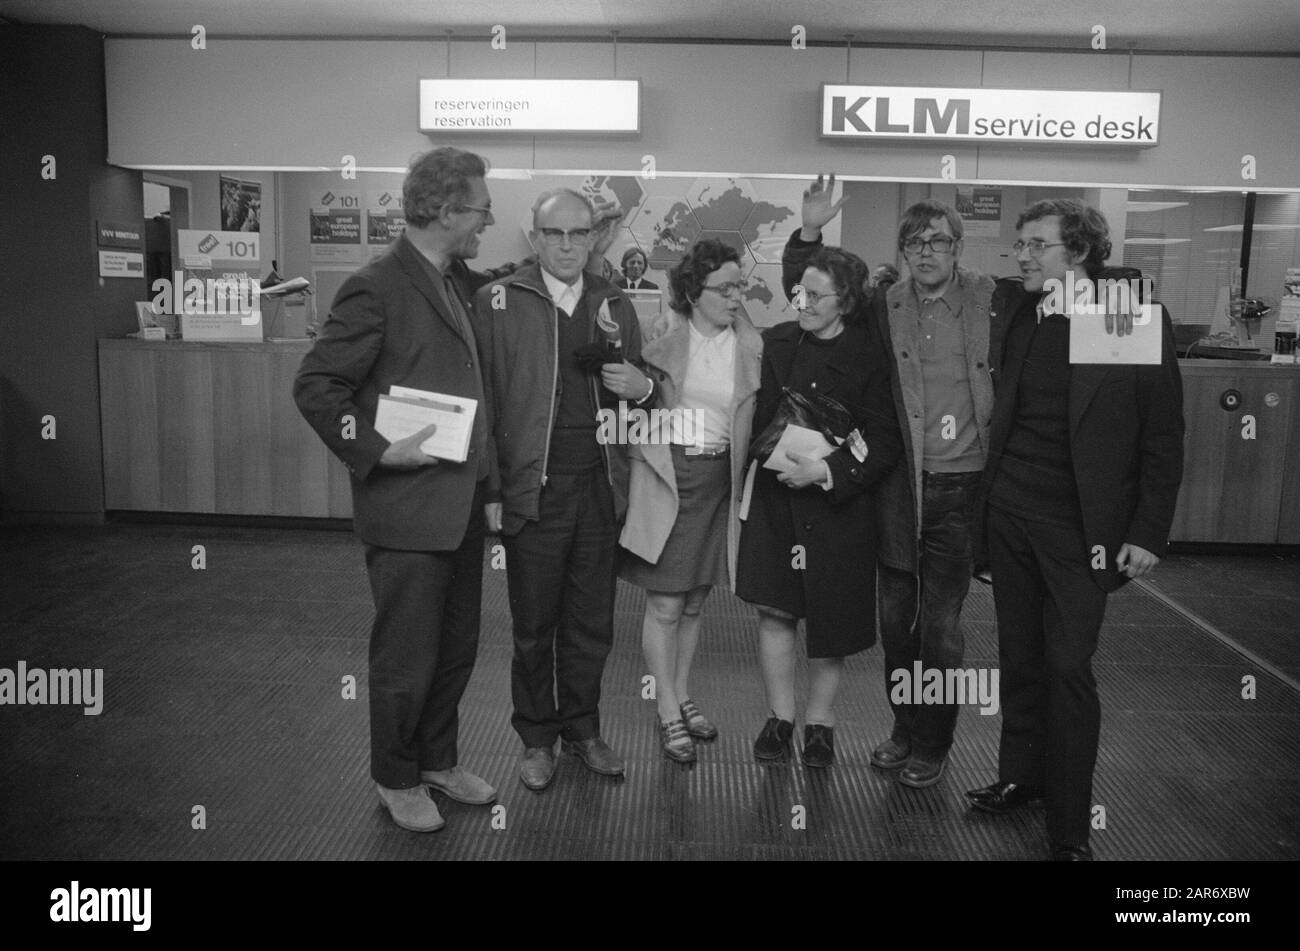 I missionari olandesi arrivano a Schiphol dopo il colpo di stato militare in Cile Data: 24 settembre 1973 Località: Noord-Holland, Schiphol Parole Chiave: RechionARIAN Foto Stock